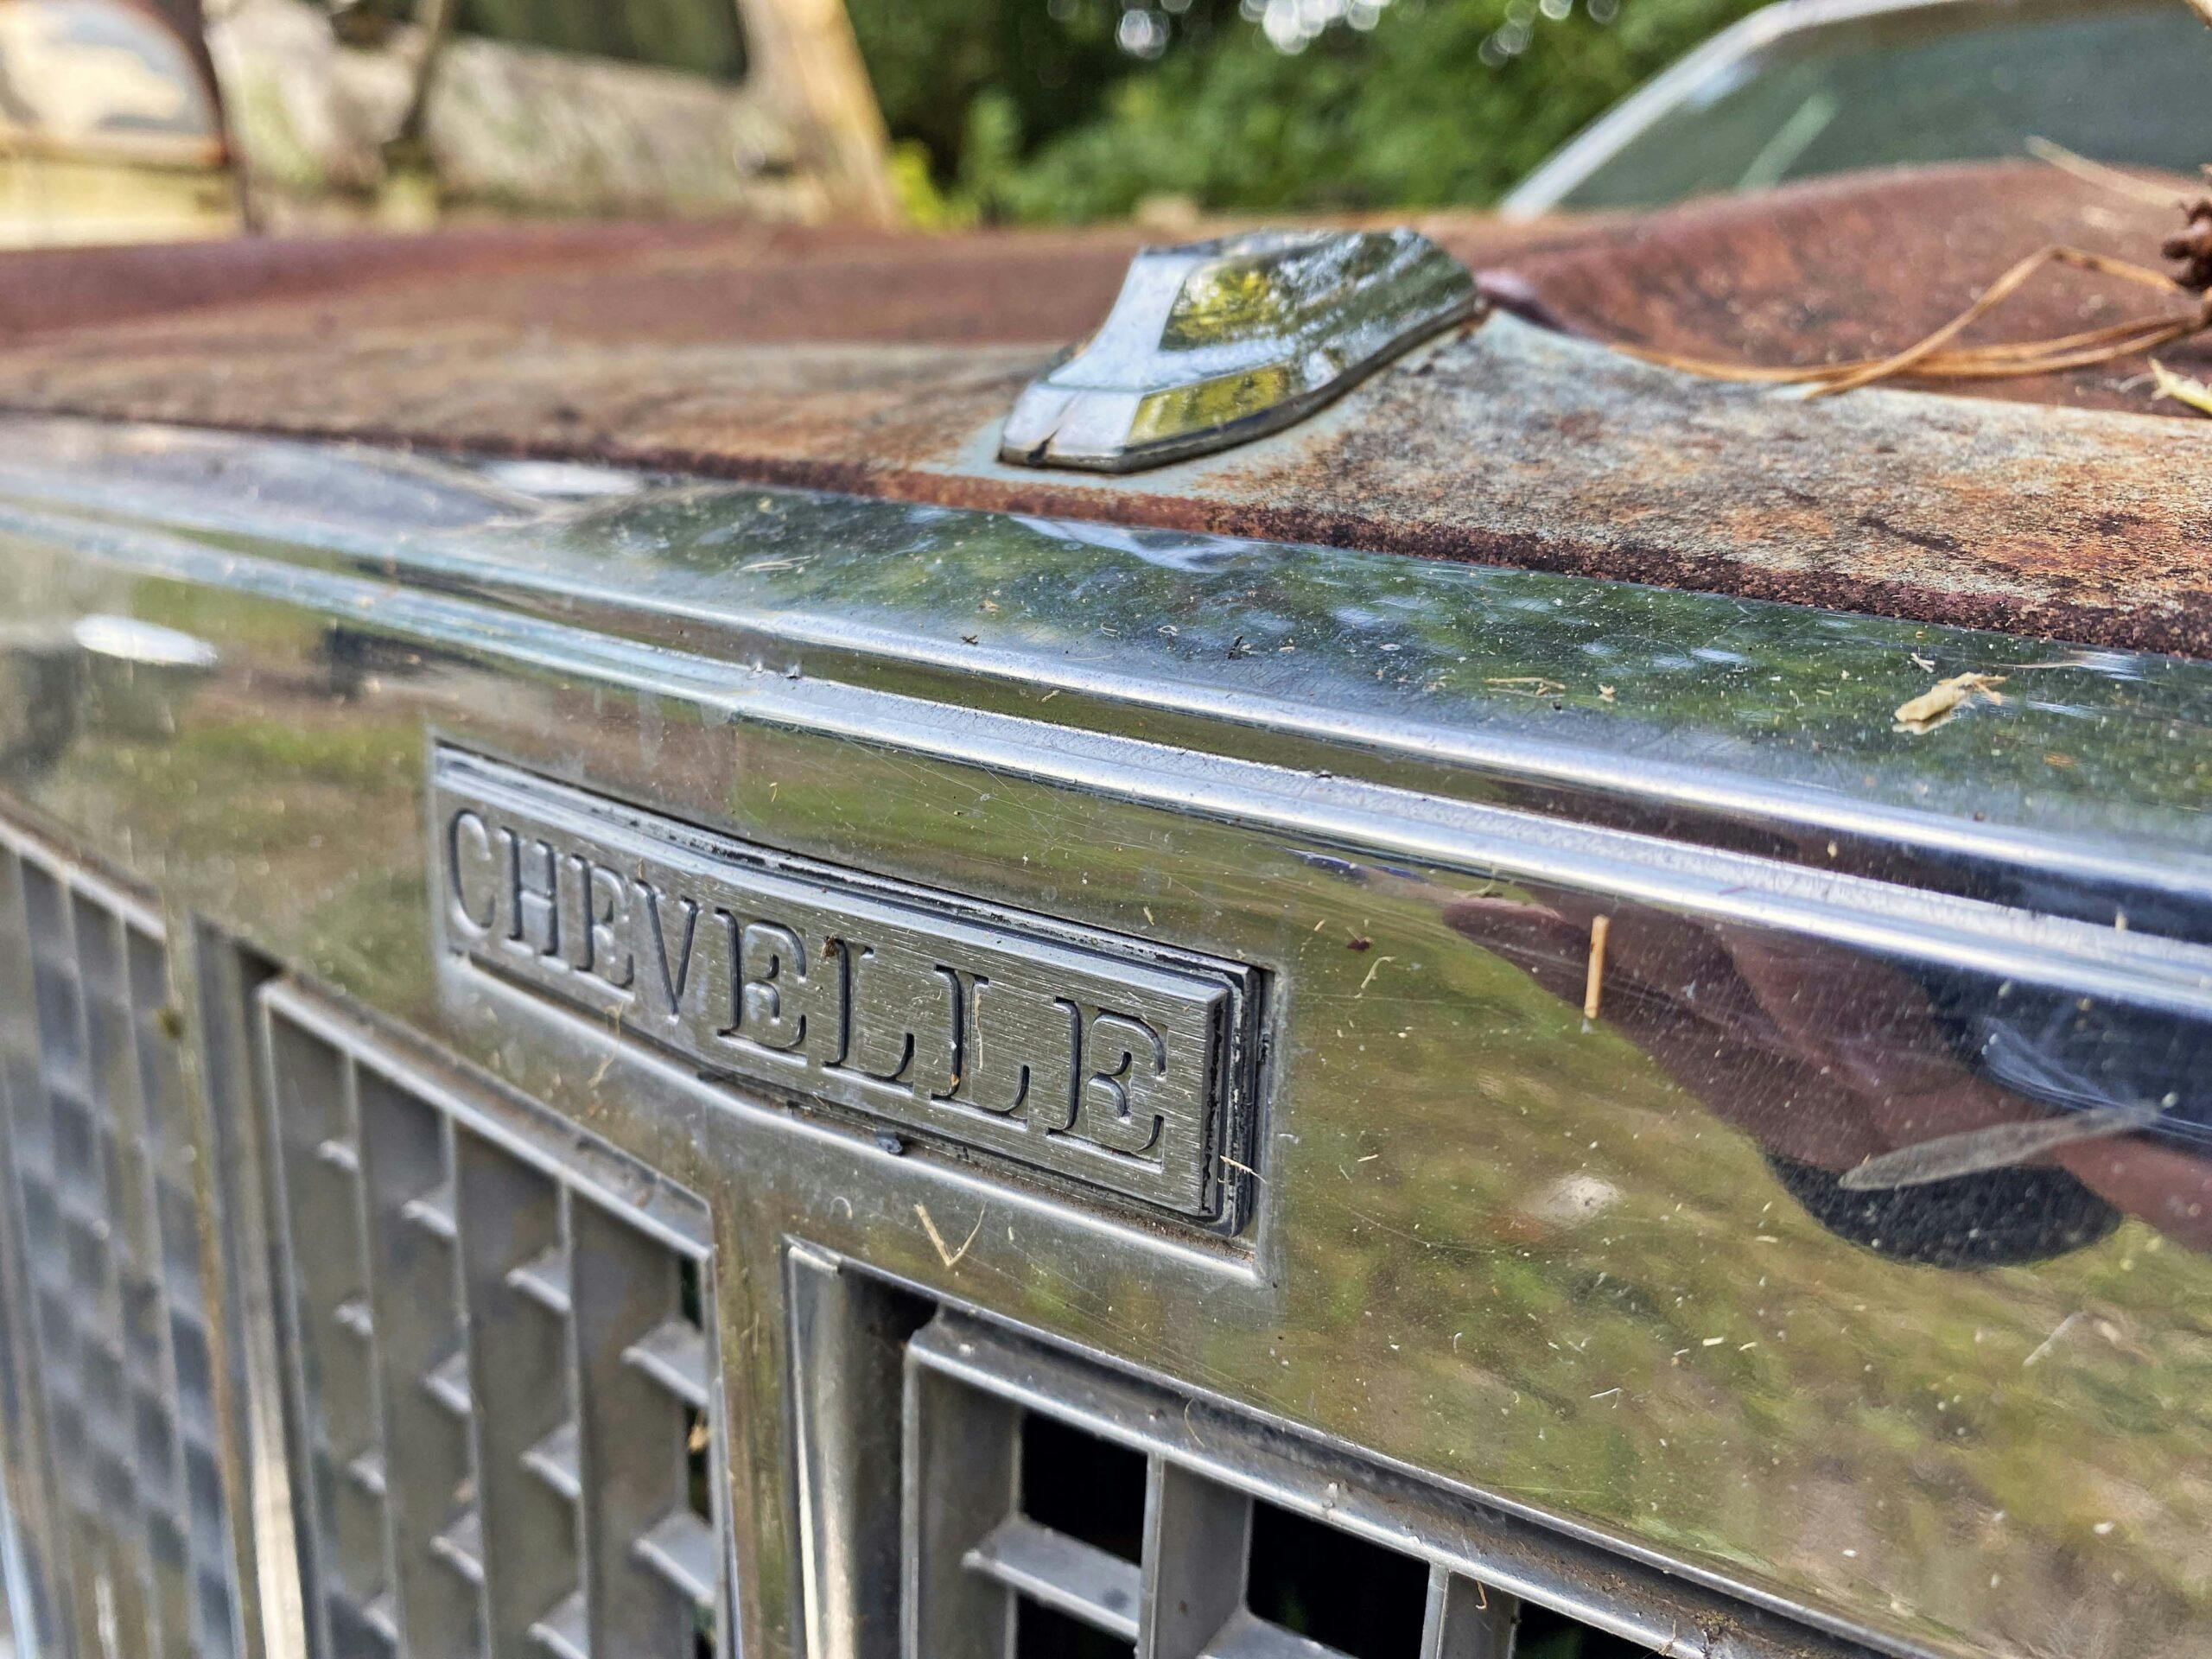 Chevrolet Chevelle grille junkyard chrome detail